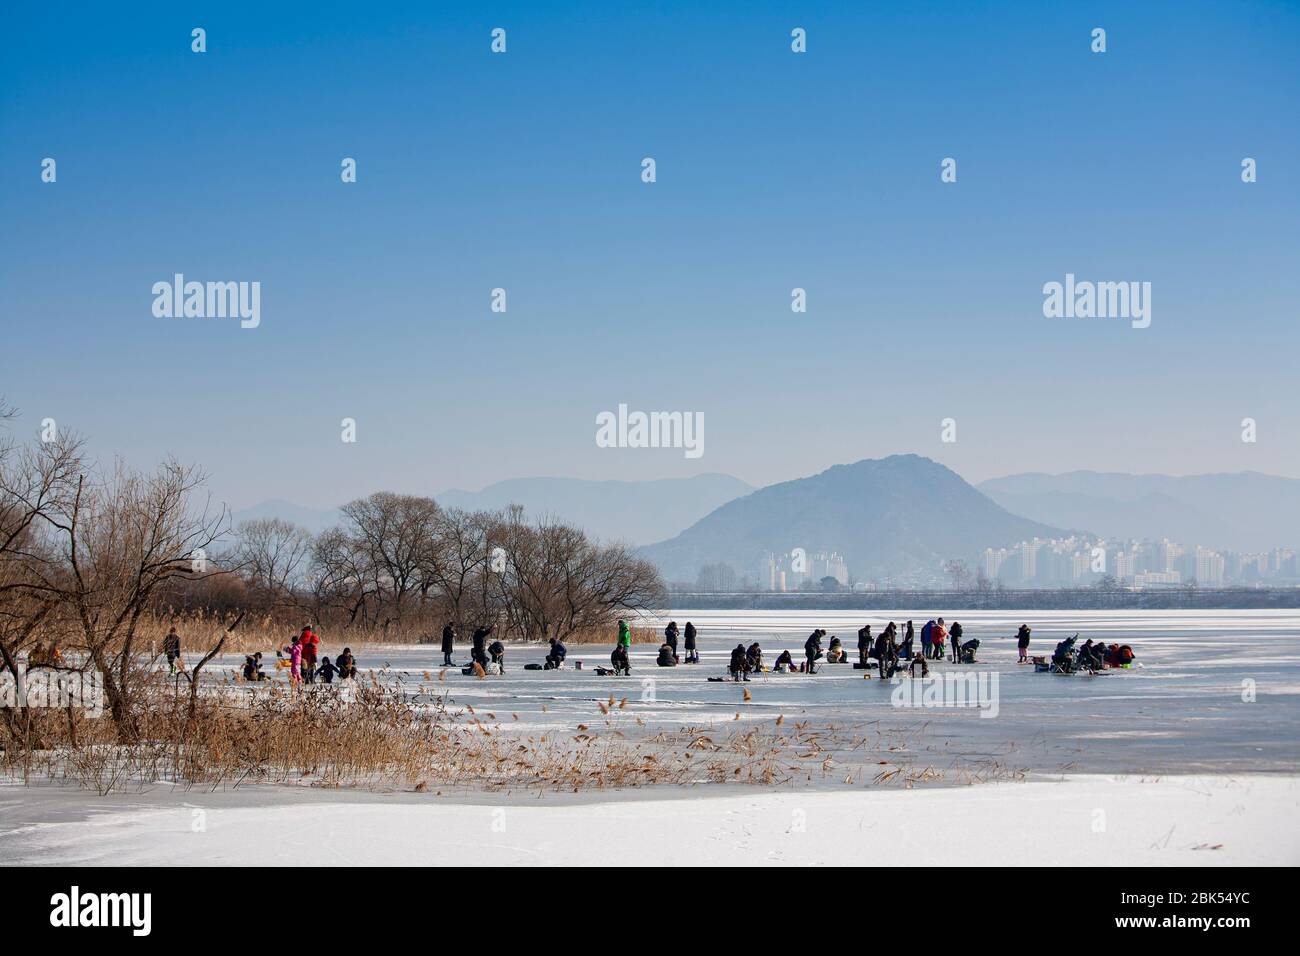 Beaucoup de gens apprécient la pêche sur glace au lac Uiamho, Chuncheon-si, Corée Banque D'Images